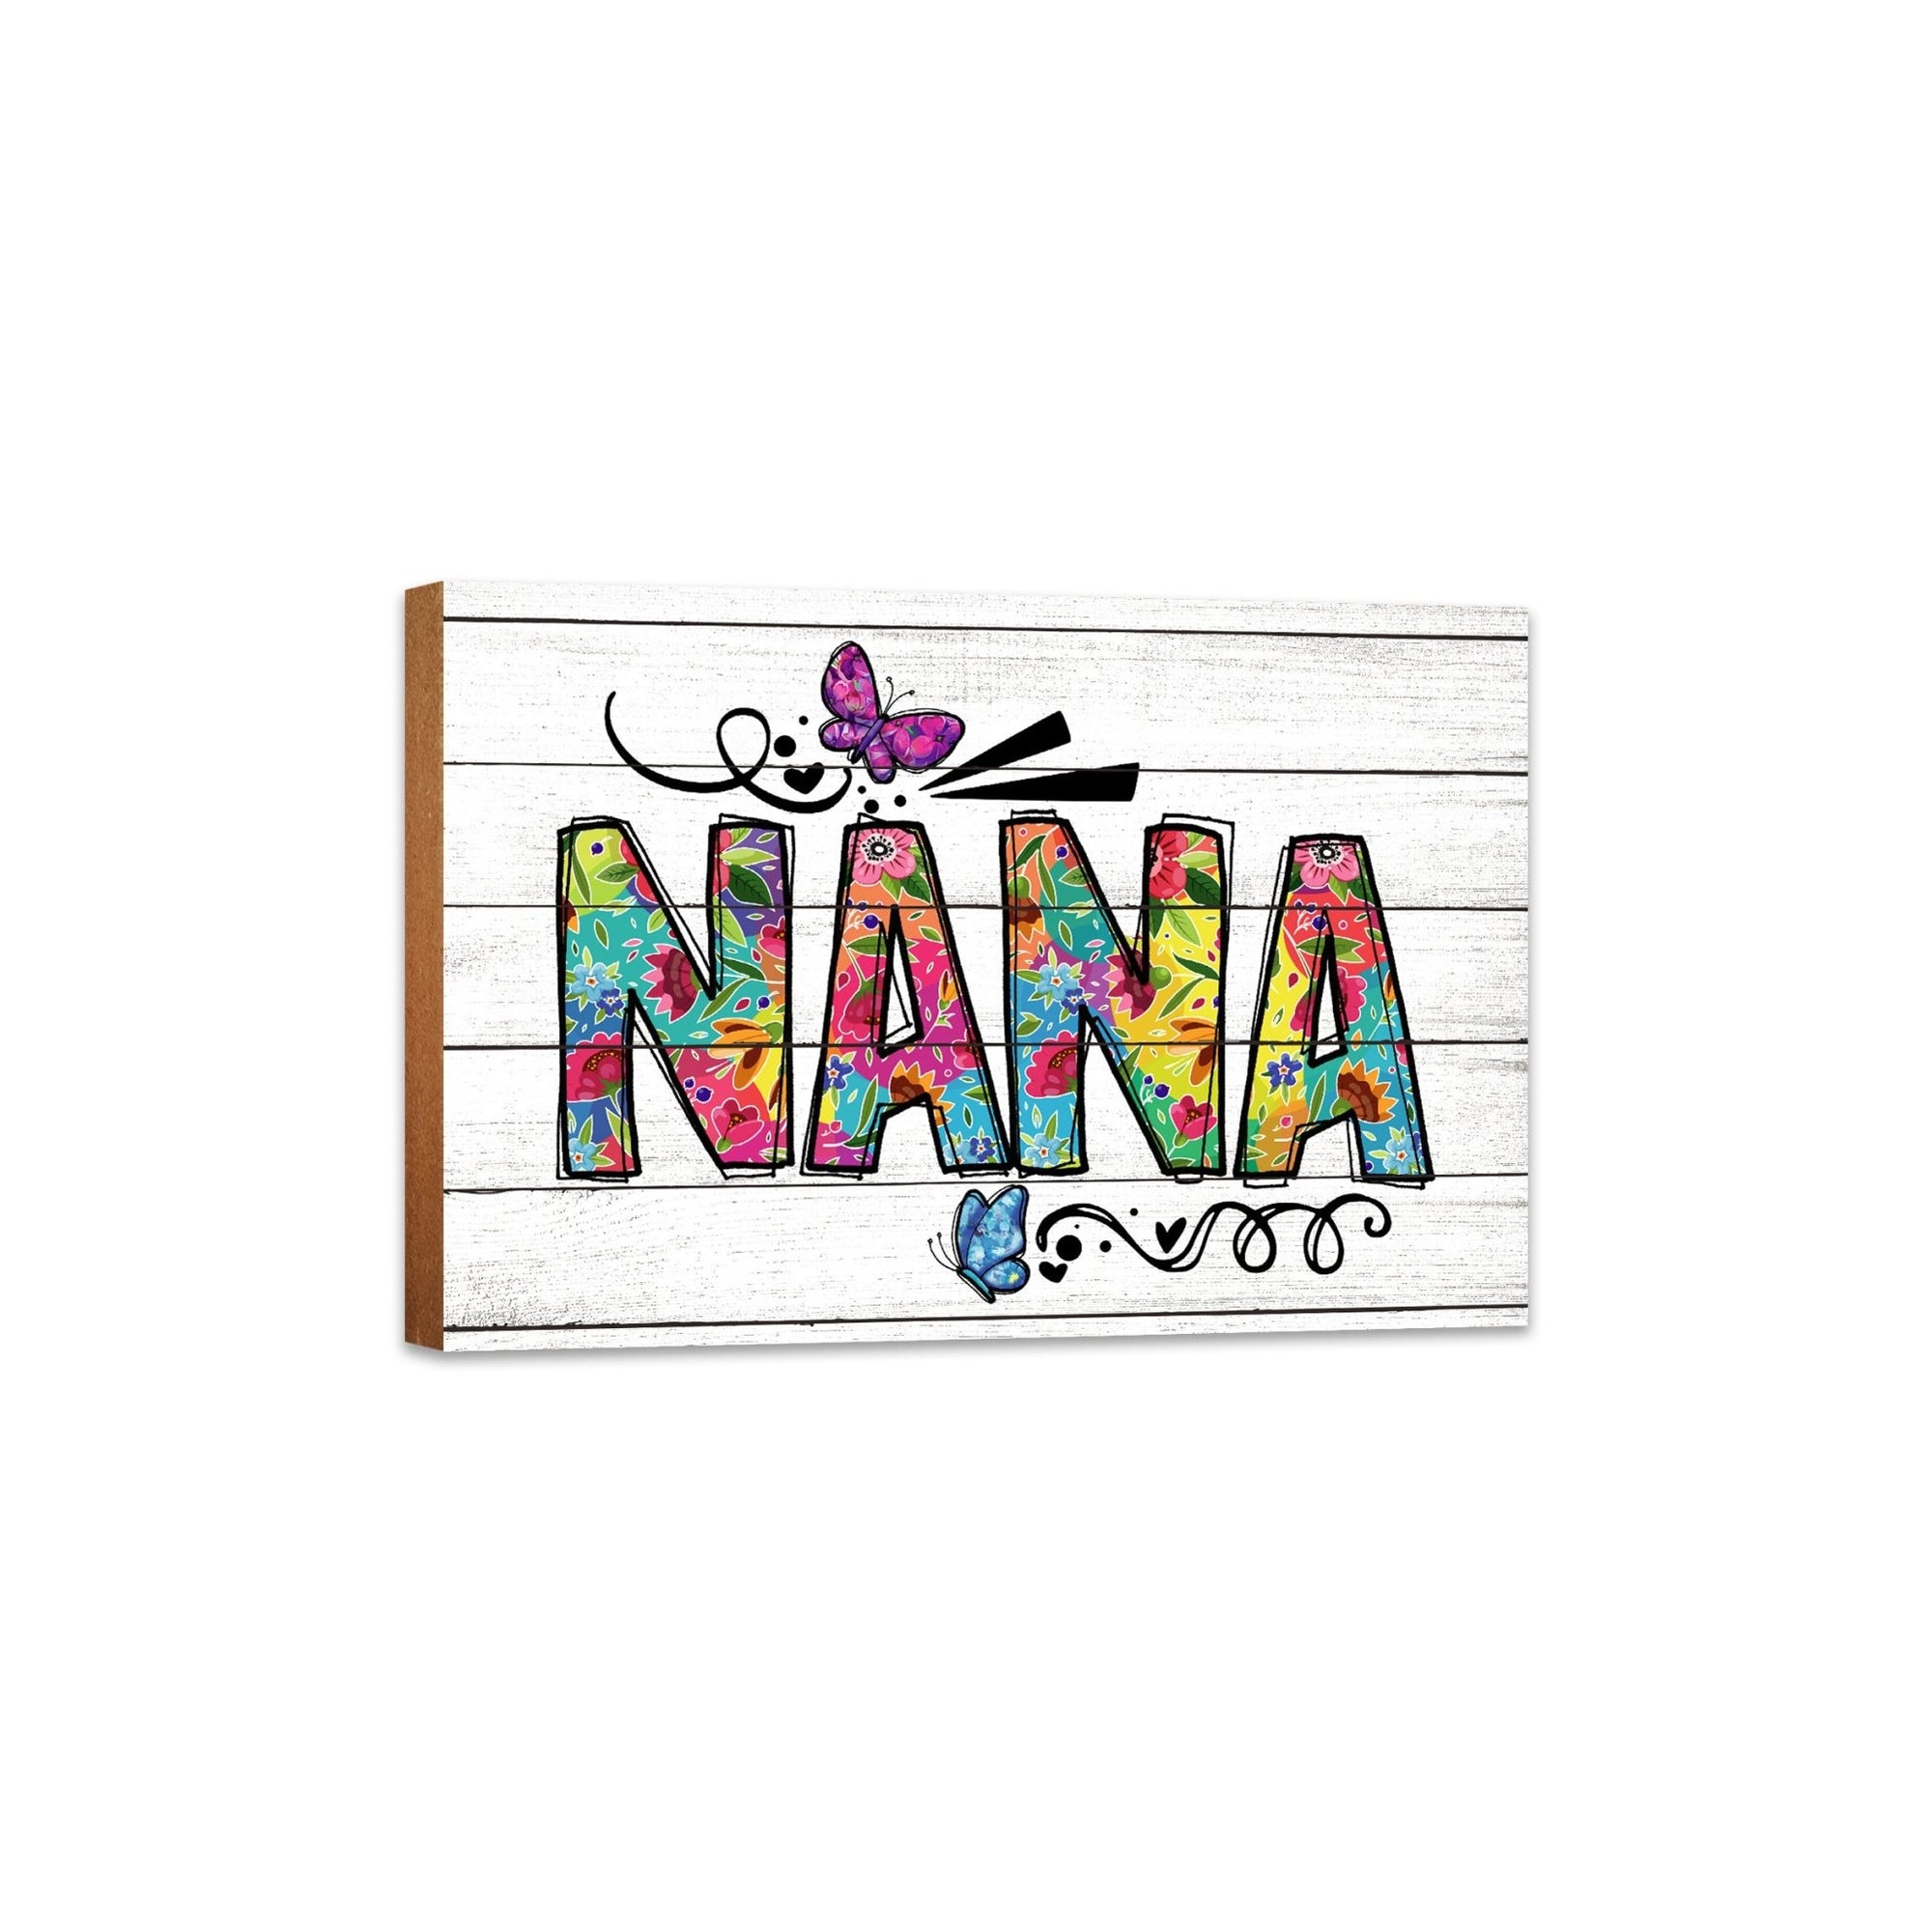 Modern-Inspired White Wooden Graffiti Art Shelf Sitter Gift Idea & Home Décor - Nana - LifeSong Milestones